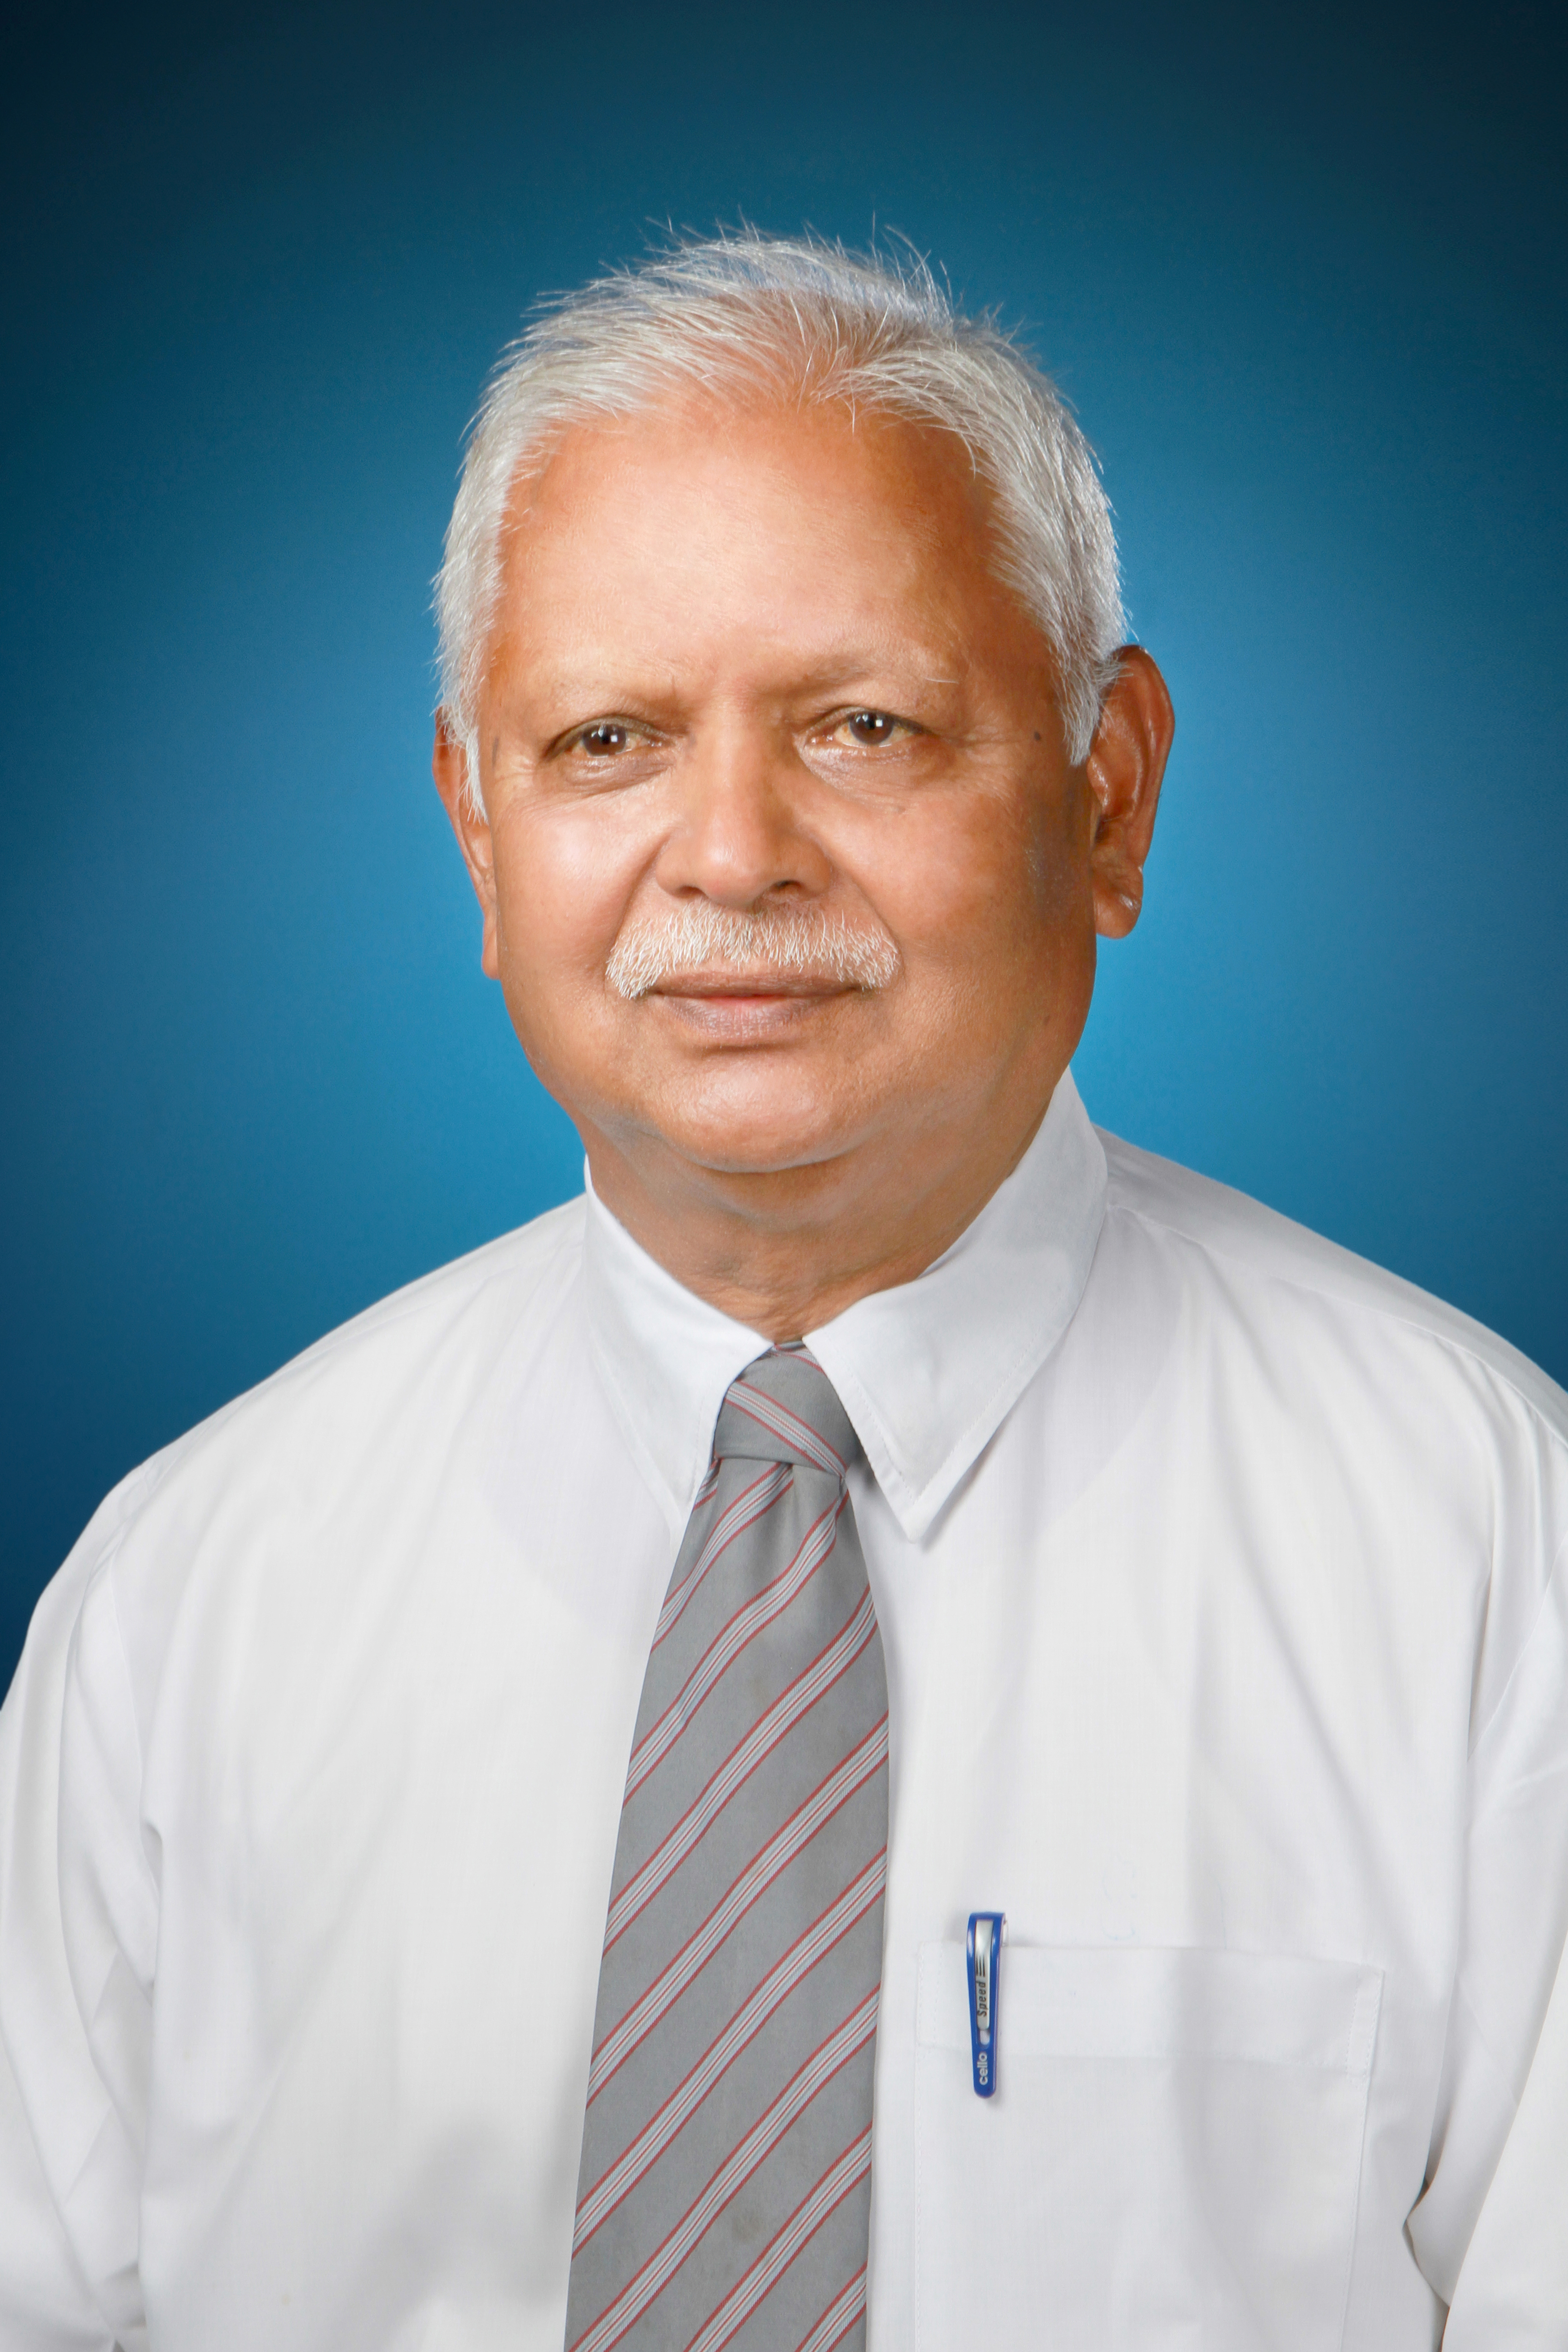 Shri.  Advt. Mahadev H. Chavare